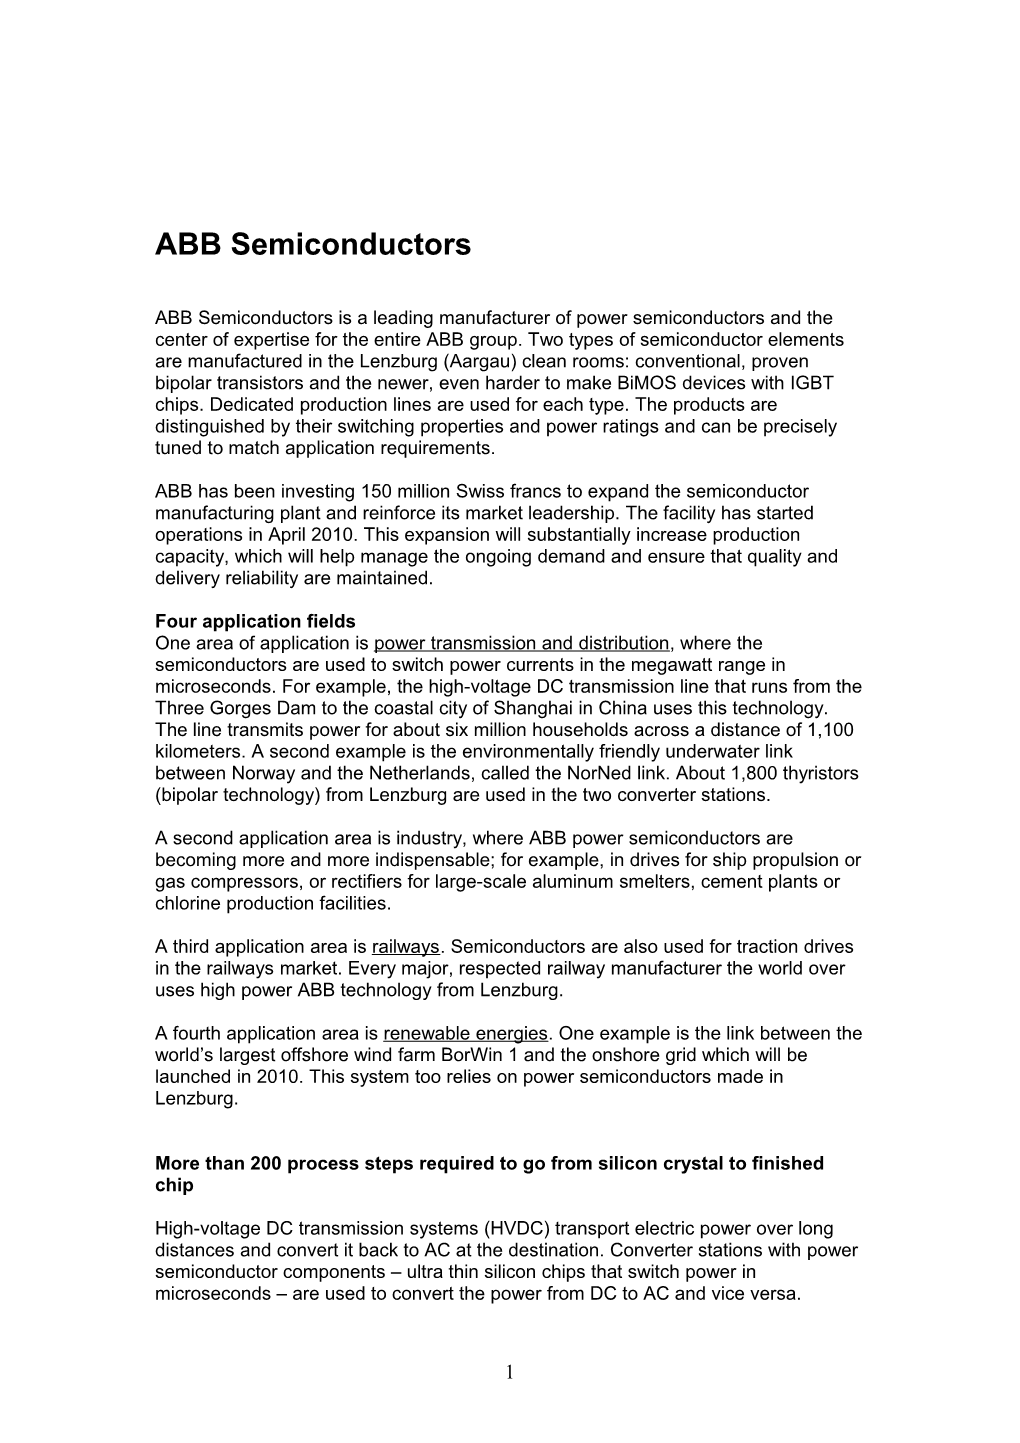 ABB Semiconductors, Lenzburg